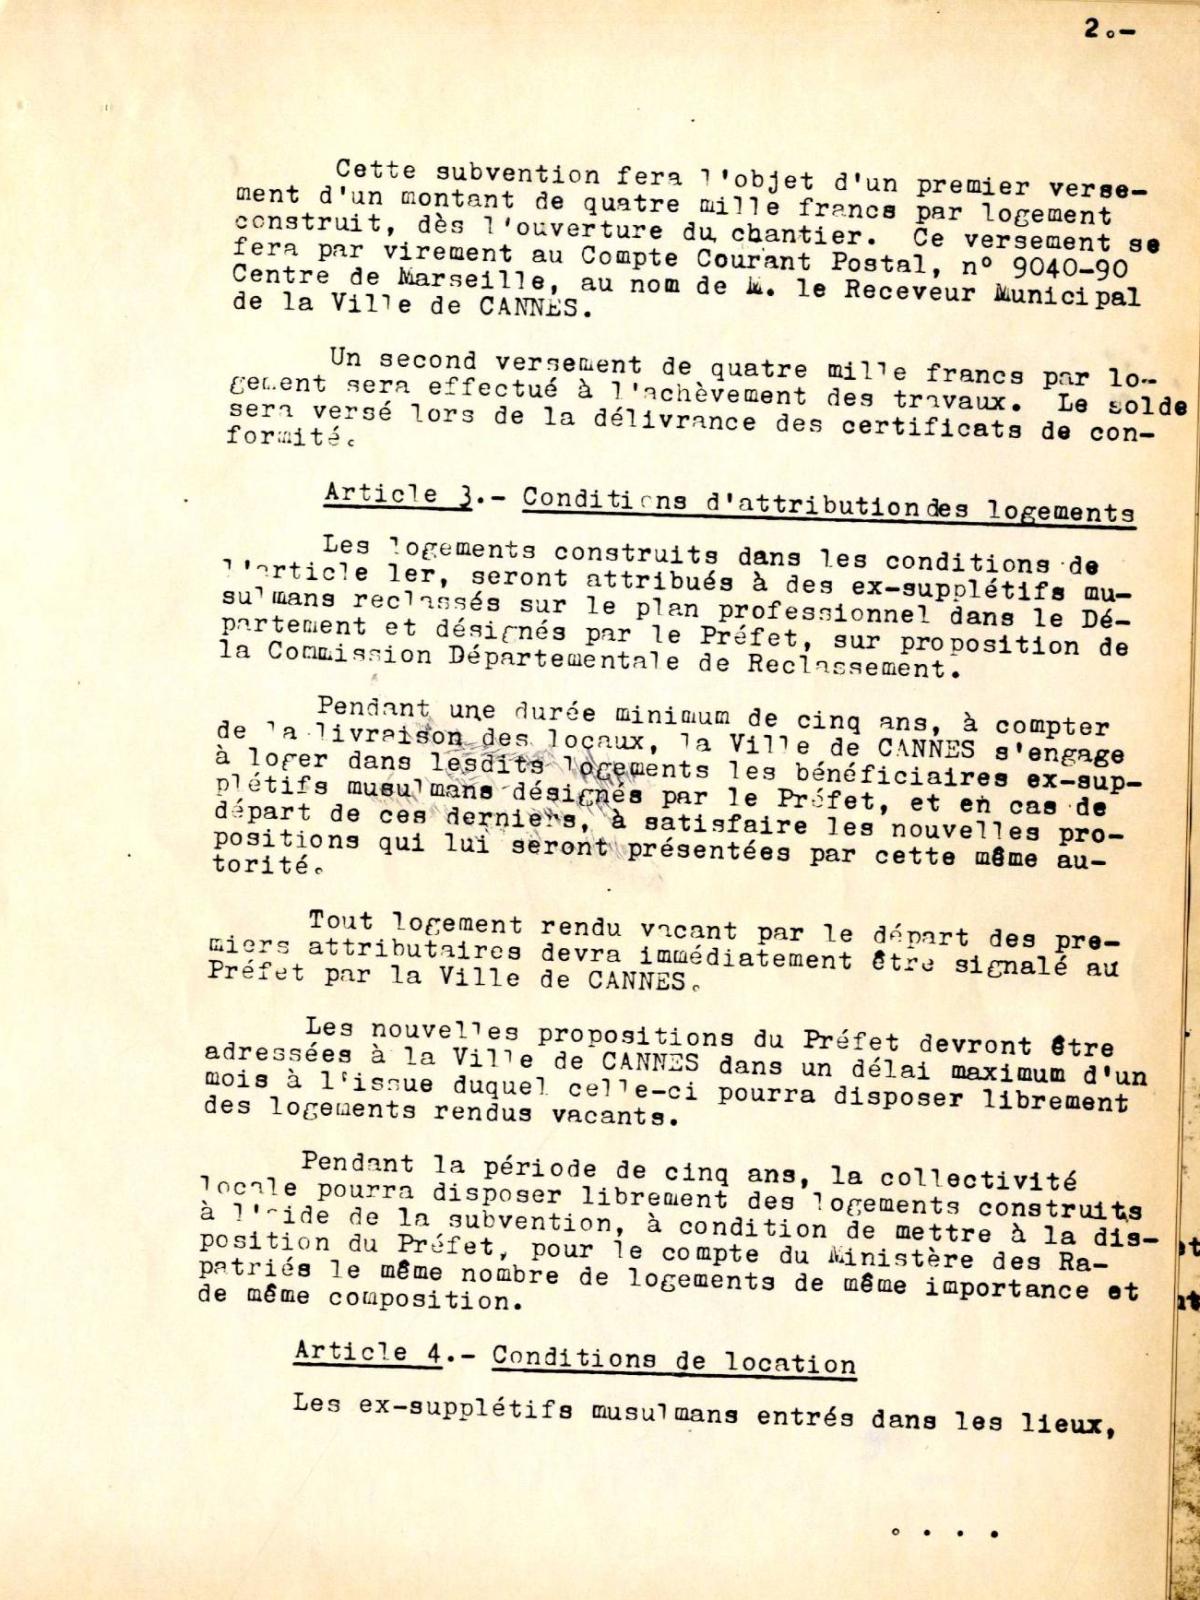 Illustration 5 : cité des Mimosas à Cannes, convention signée entre le ministère des Rapatriés et le député-maire de Cannes, 25 mai 1964 (Archives de Cannes, 235W1)